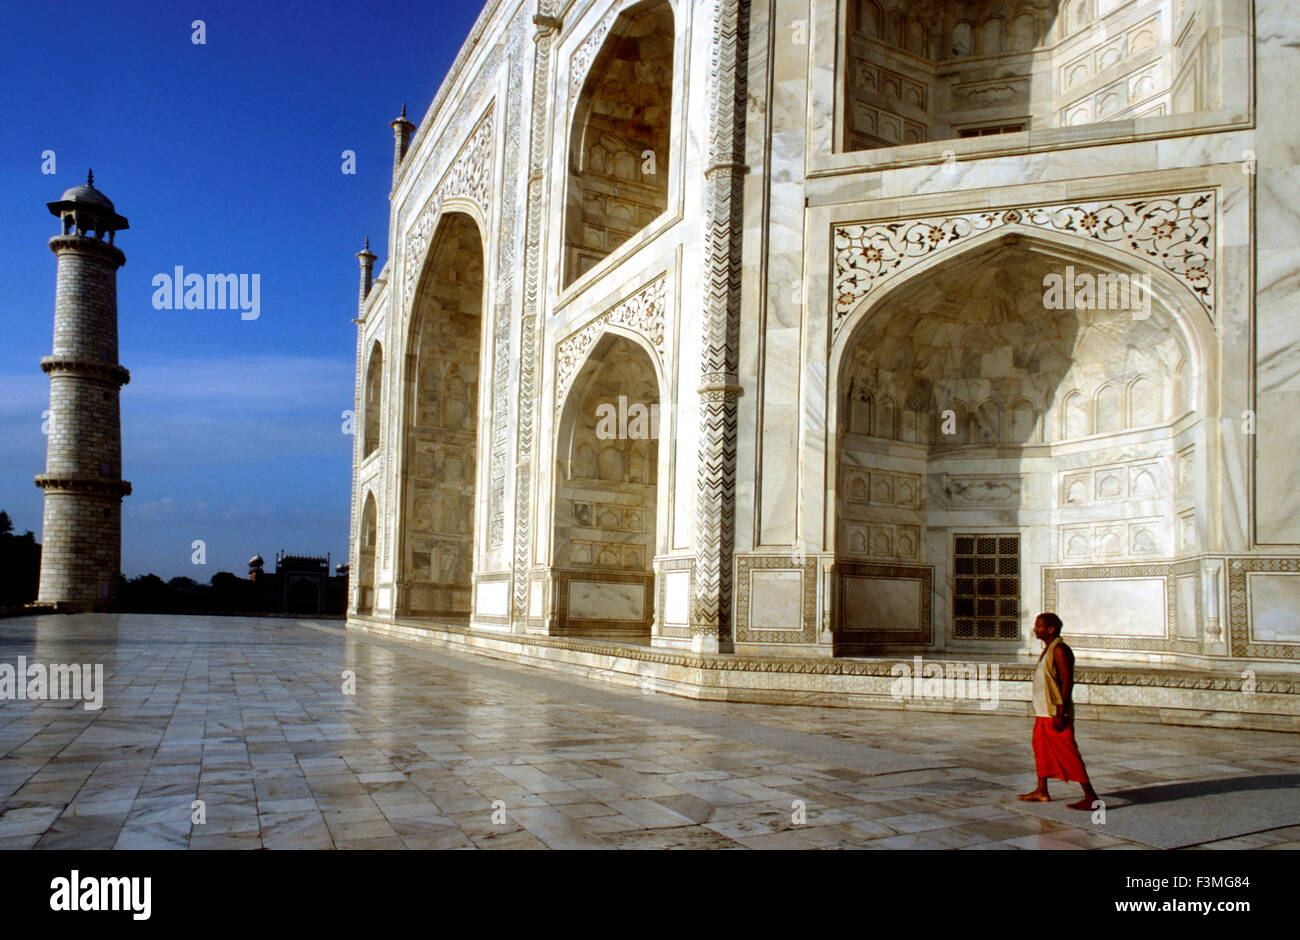 Agra, Uttar Pradesh. Taj Mahal dans la rivière Yamuna, Agra, Inde Le Taj Mahal est un mausolée situé à Agra, en Inde, construit par l'empereur Moghol Shah Jahan en mémoire de son épouse favorite, Mumtaz Mahal. Le Taj Mahal est considéré comme le plus bel exemple de l'architecture de Mughal, un style qui combine des éléments du persan, ottomane, indienne, et styles architecturaux islamiques. En 1983, le Taj Mahal est devenu Site du patrimoine mondial de l'UNESCO et a été cité comme "le joyau de l'art musulman en Inde et l'un des chefs-d'œuvre universellement admirés du patrimoine dans le monde." Banque D'Images